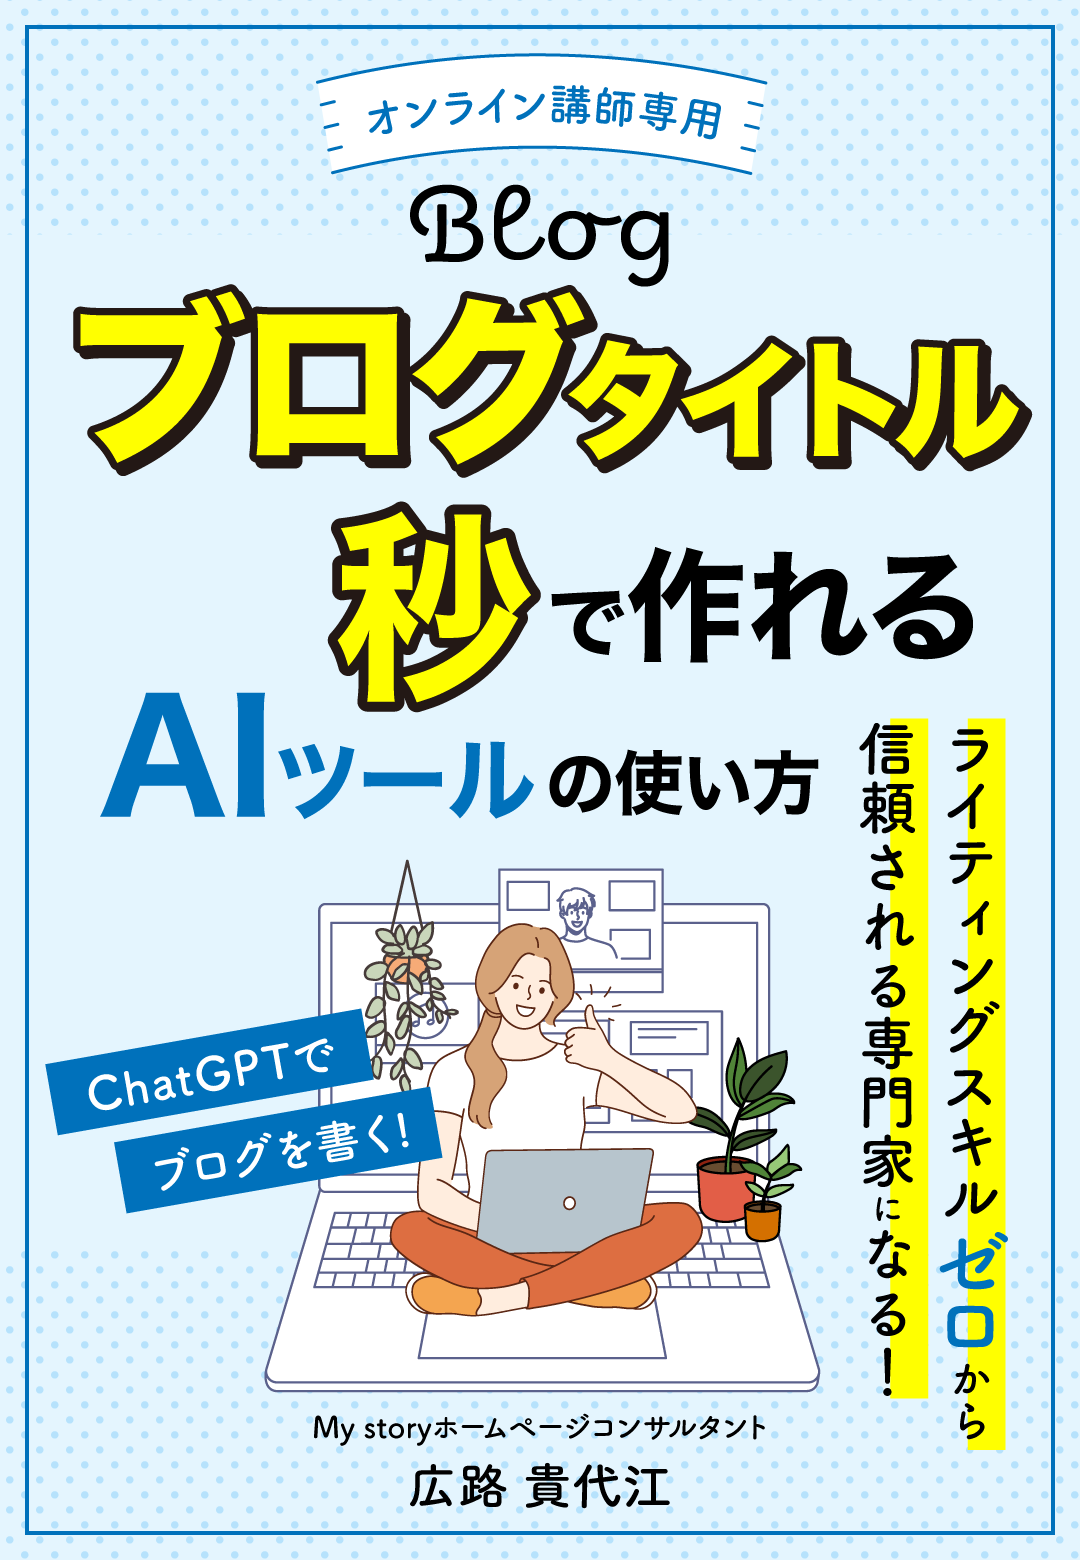 AIツール-の使い方_book.png